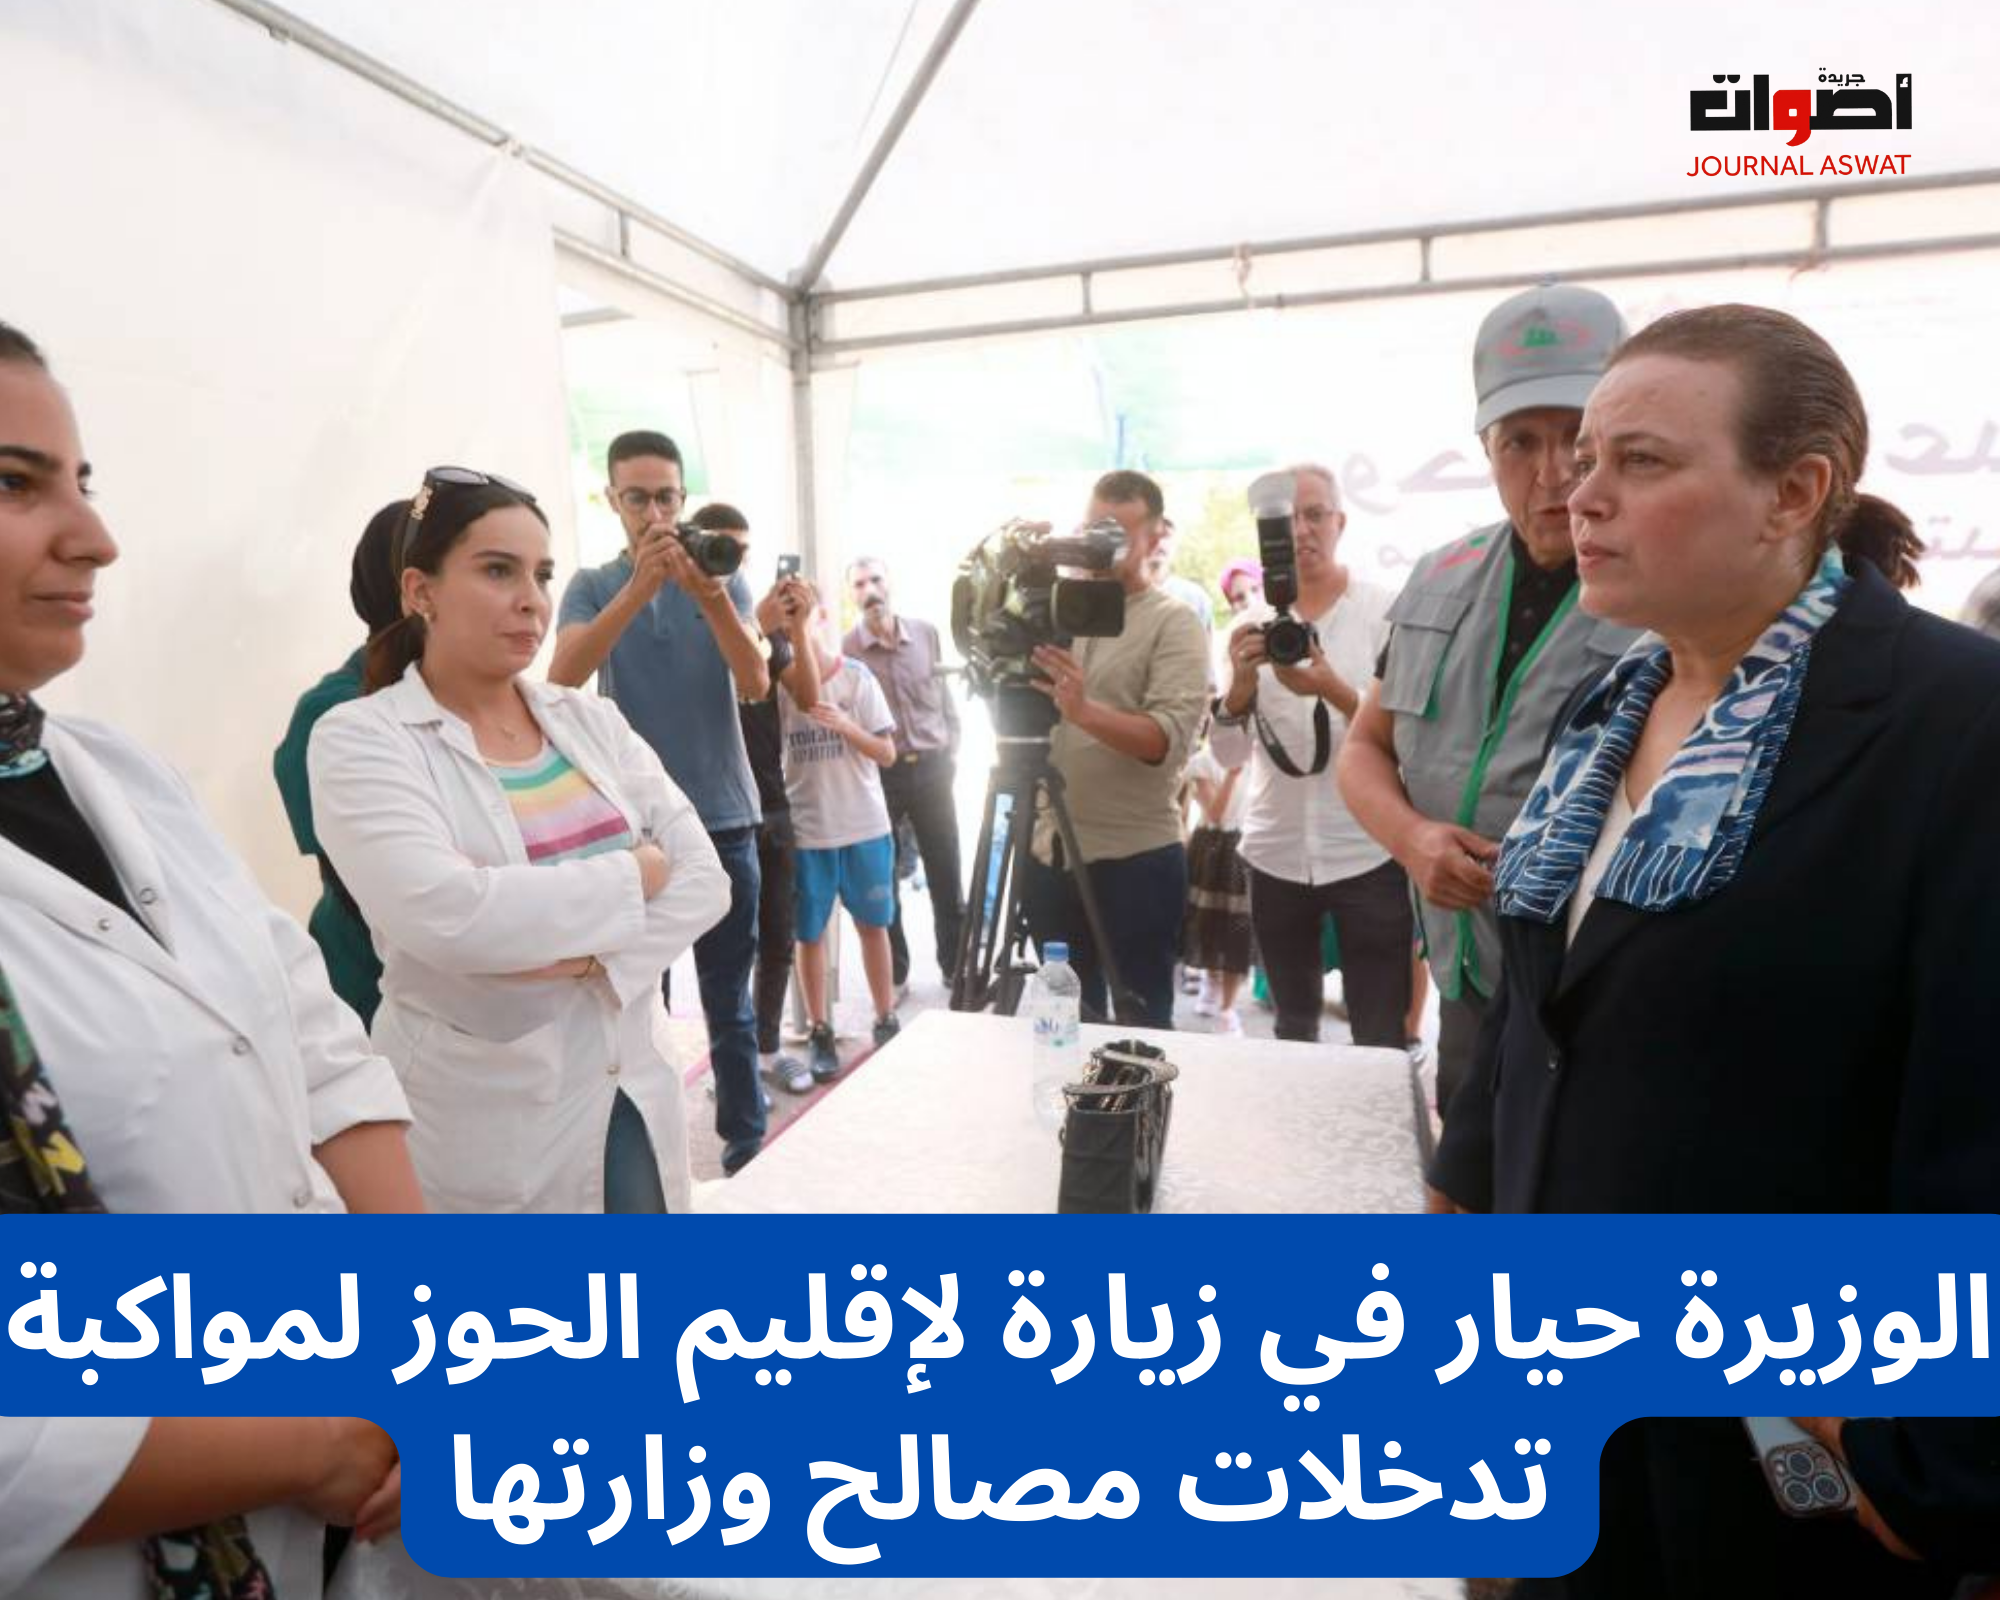 الوزيرة حيار في زيارة لإقليم الحوز لمواكبة تدخلات مصالح وزارتها